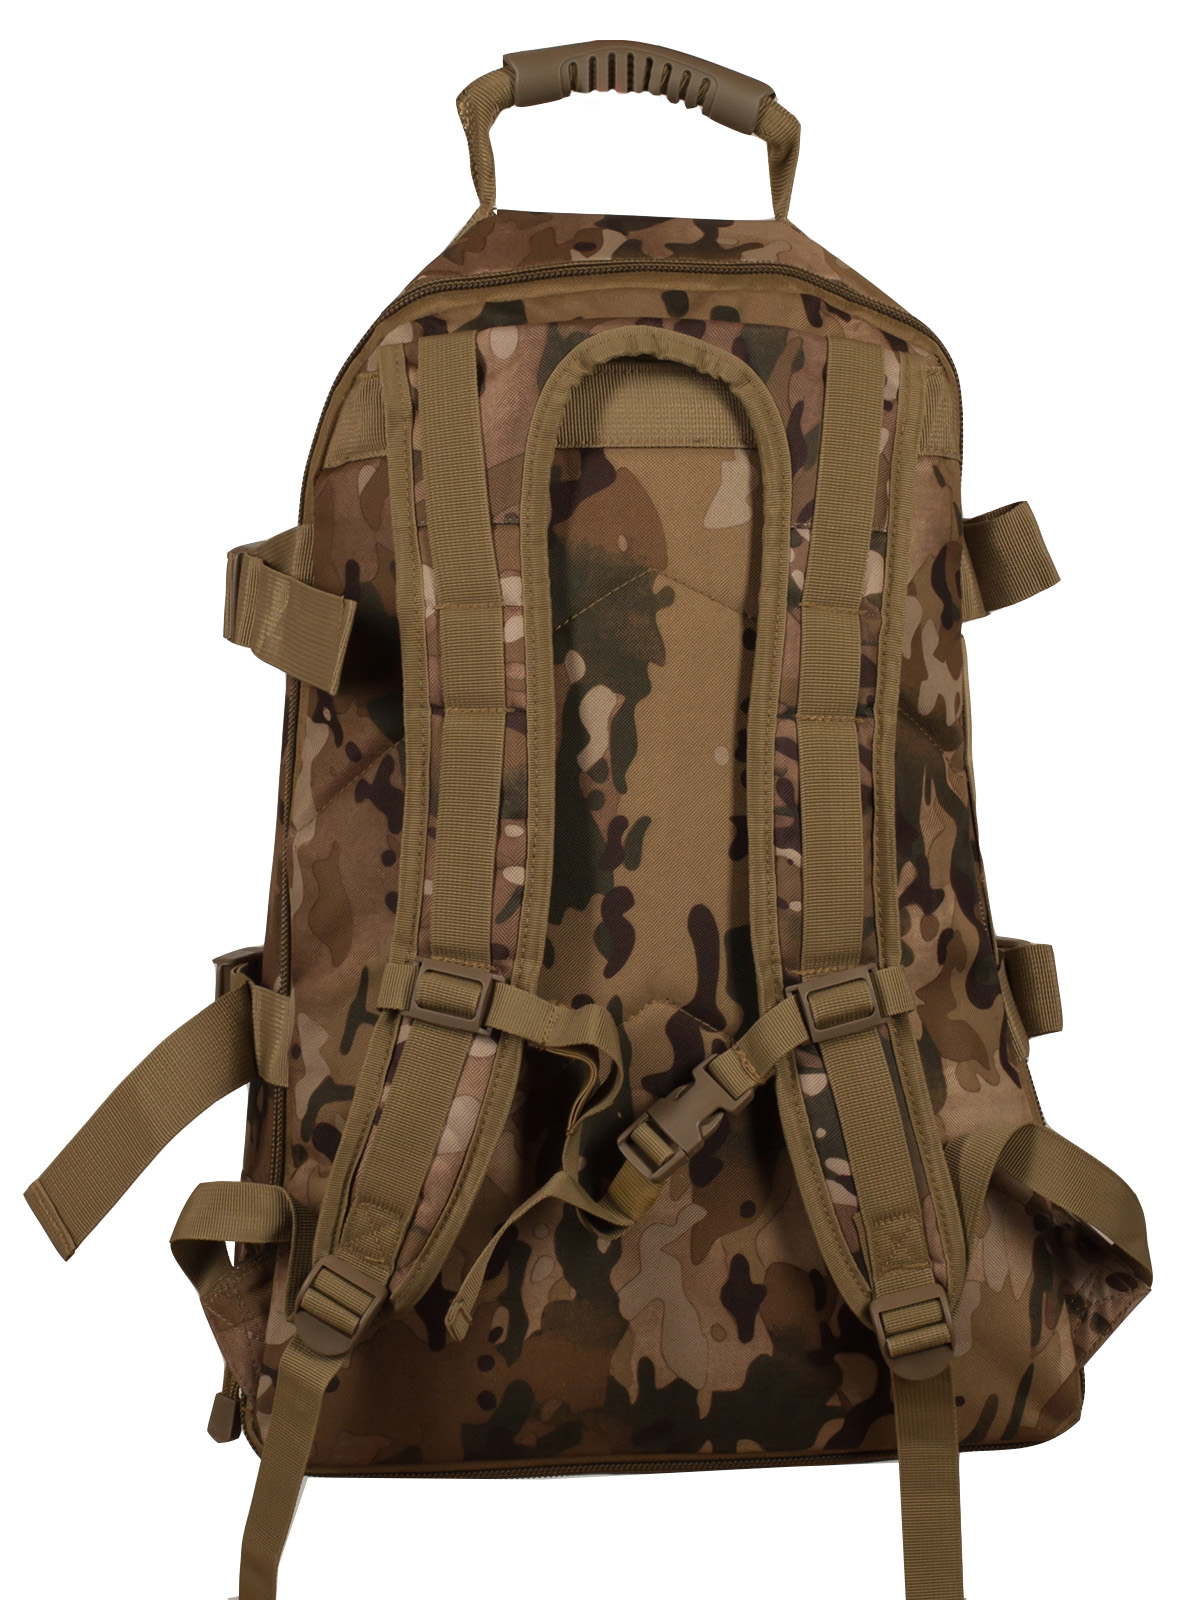 Тактический камуфляжный рюкзак с шевроном "Рыболовный спецназ" купить в подарок